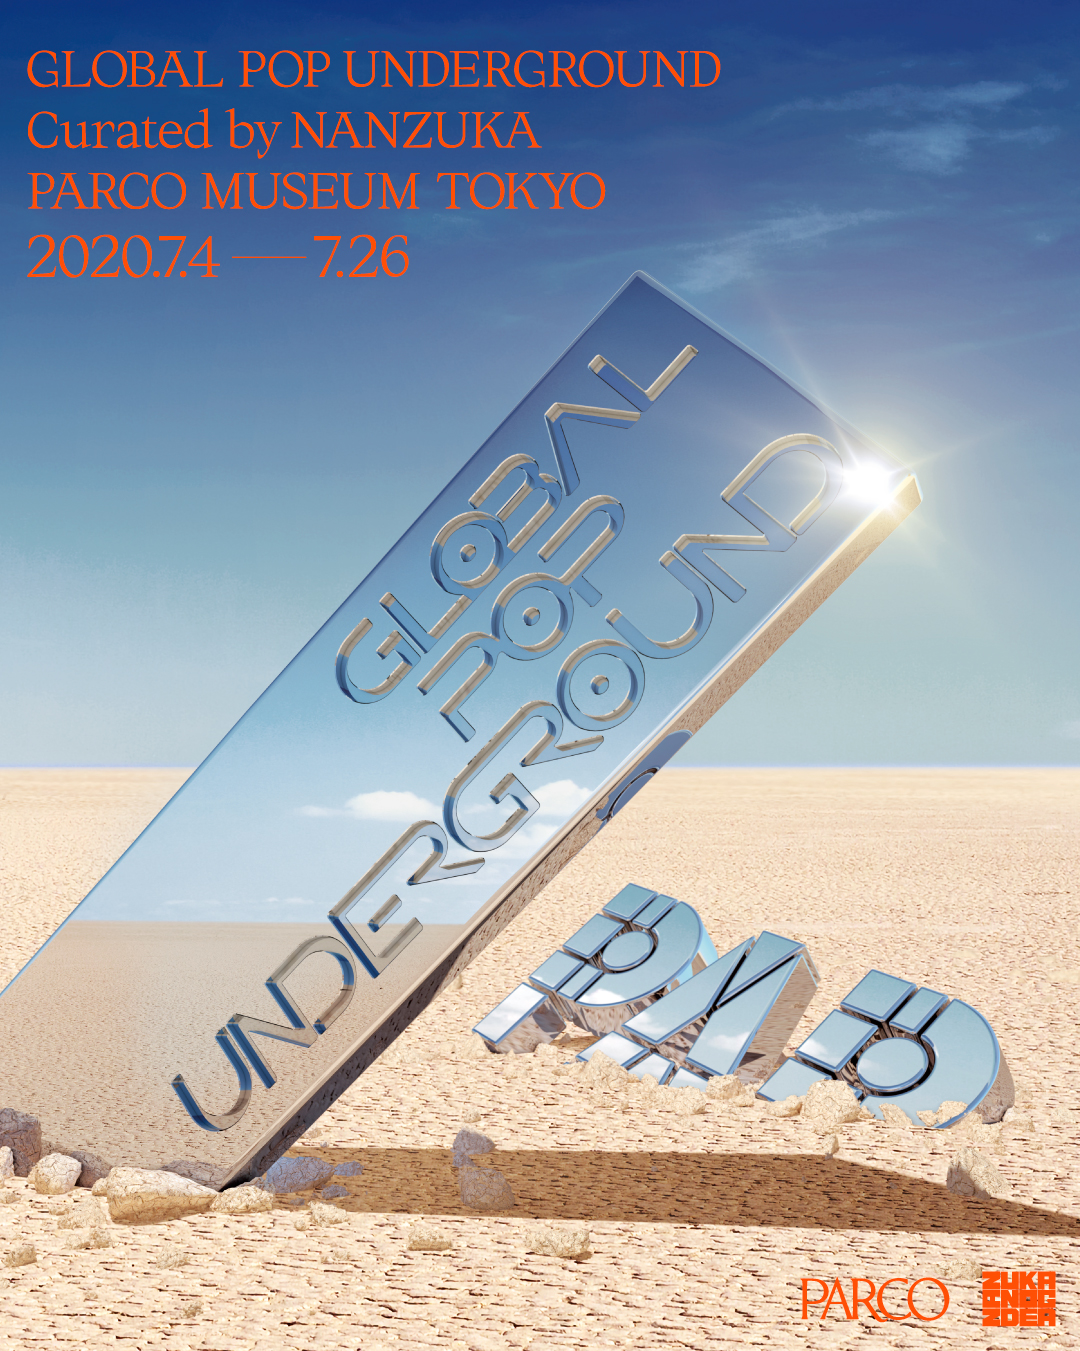 渋谷の現代アートギャラリーnanzukaのキュレーションによるグループ展 Global Pop Underground Parco Museum Tokyoにて7 4 土 より開催 株式会社パルコのプレスリリース